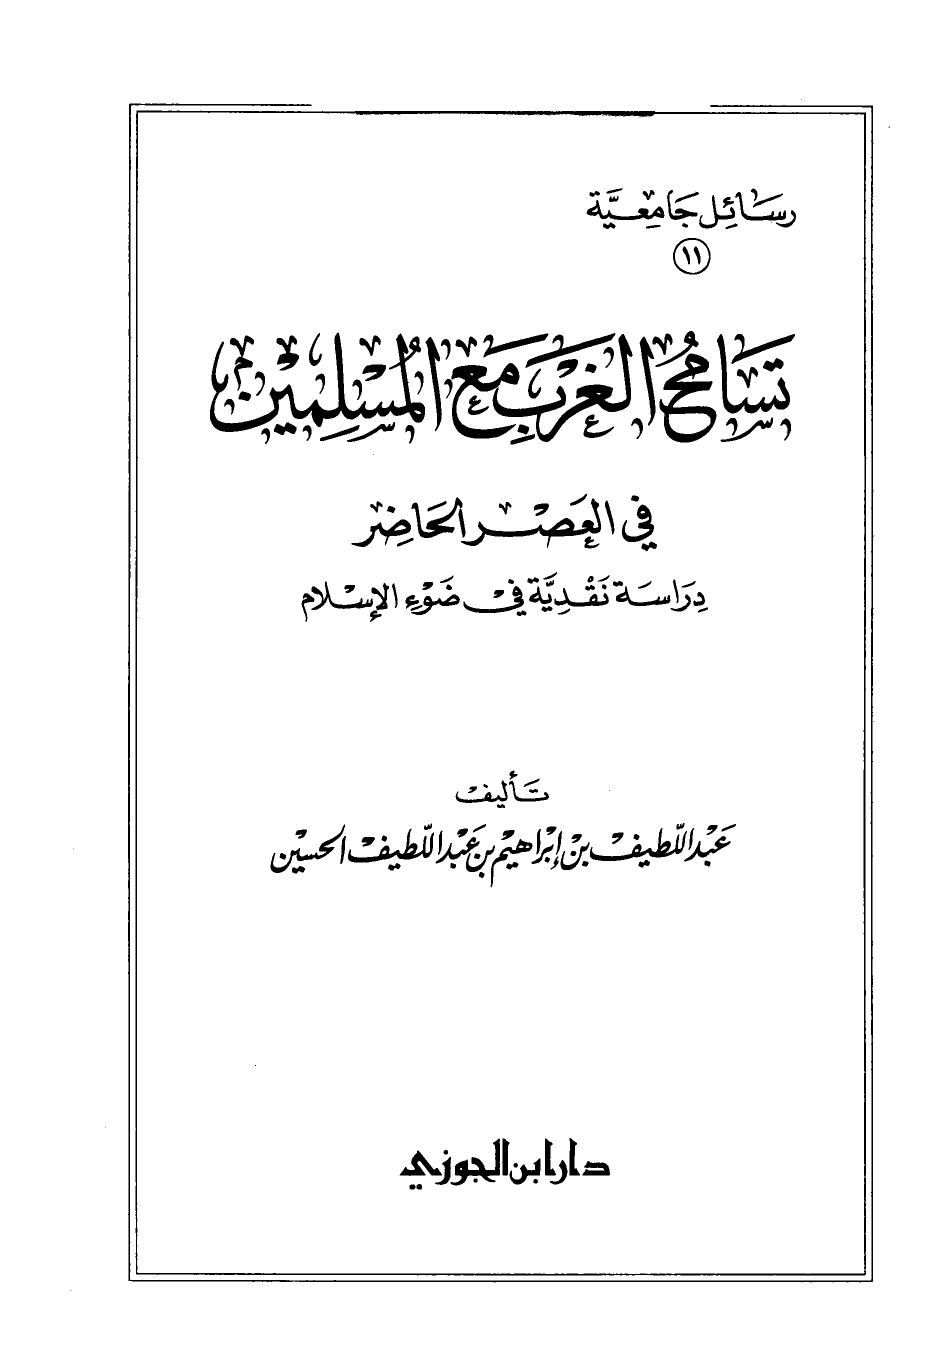 تنزيل وتحميل كتاِب تسامح الغرب مع المسلمين في العصر الحاضر دراسة نقدية في ضوء الإسلام pdf برابط مباشر مجاناً